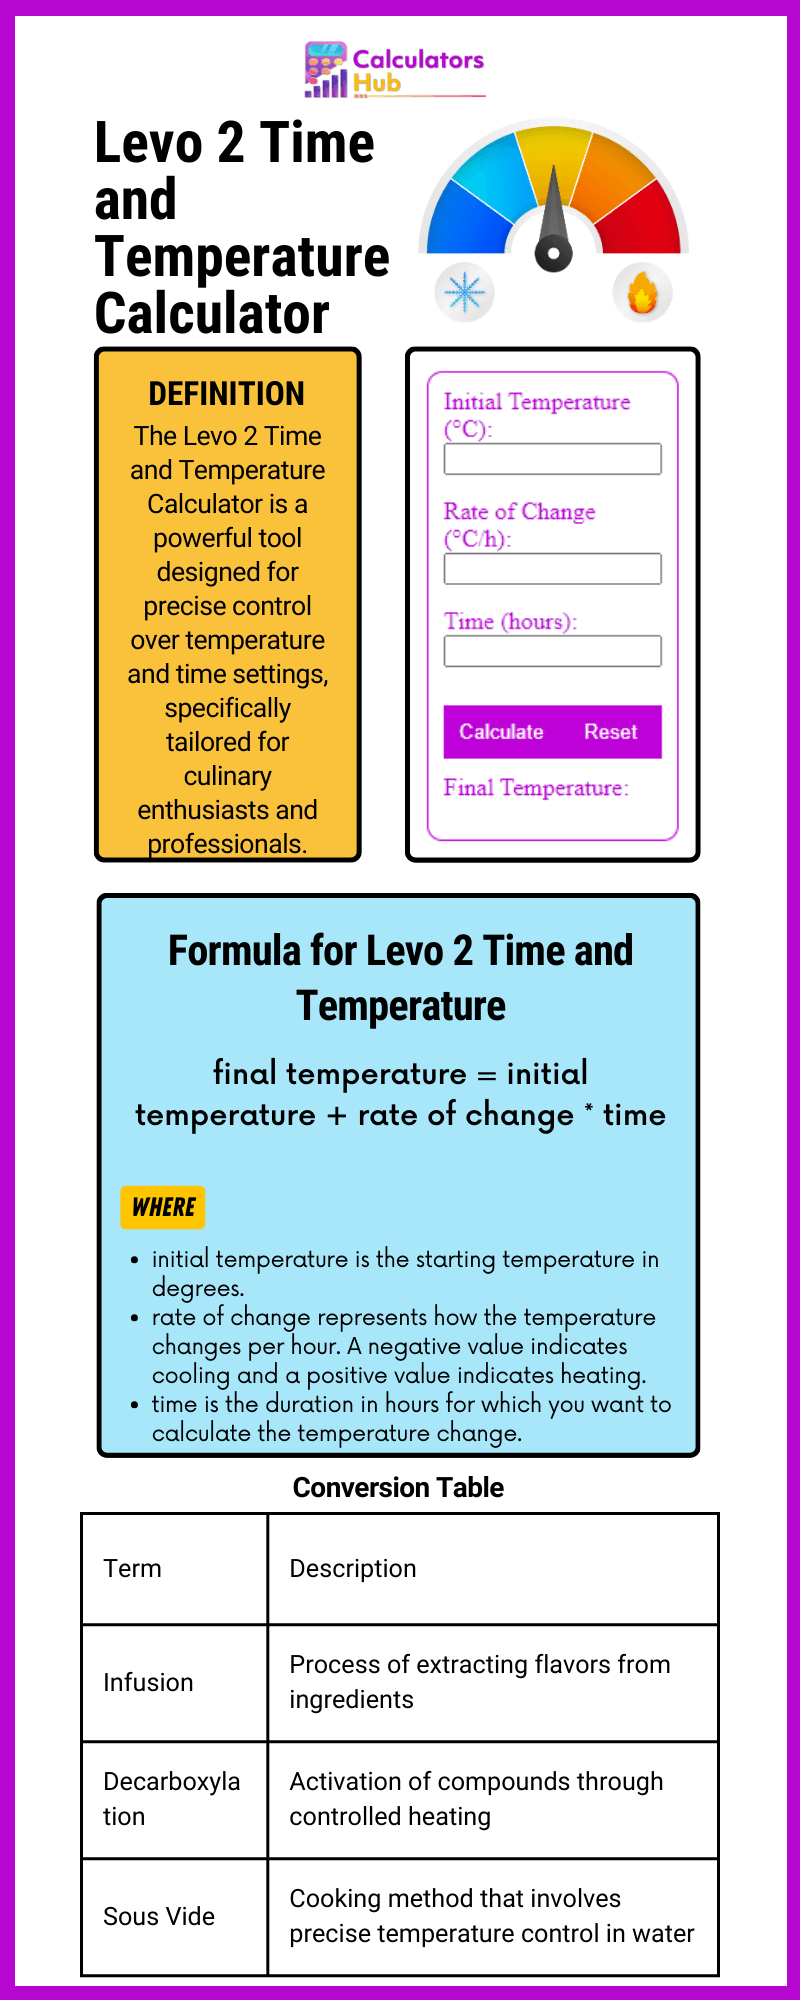 Levo 2 Time and Temperature Calculator